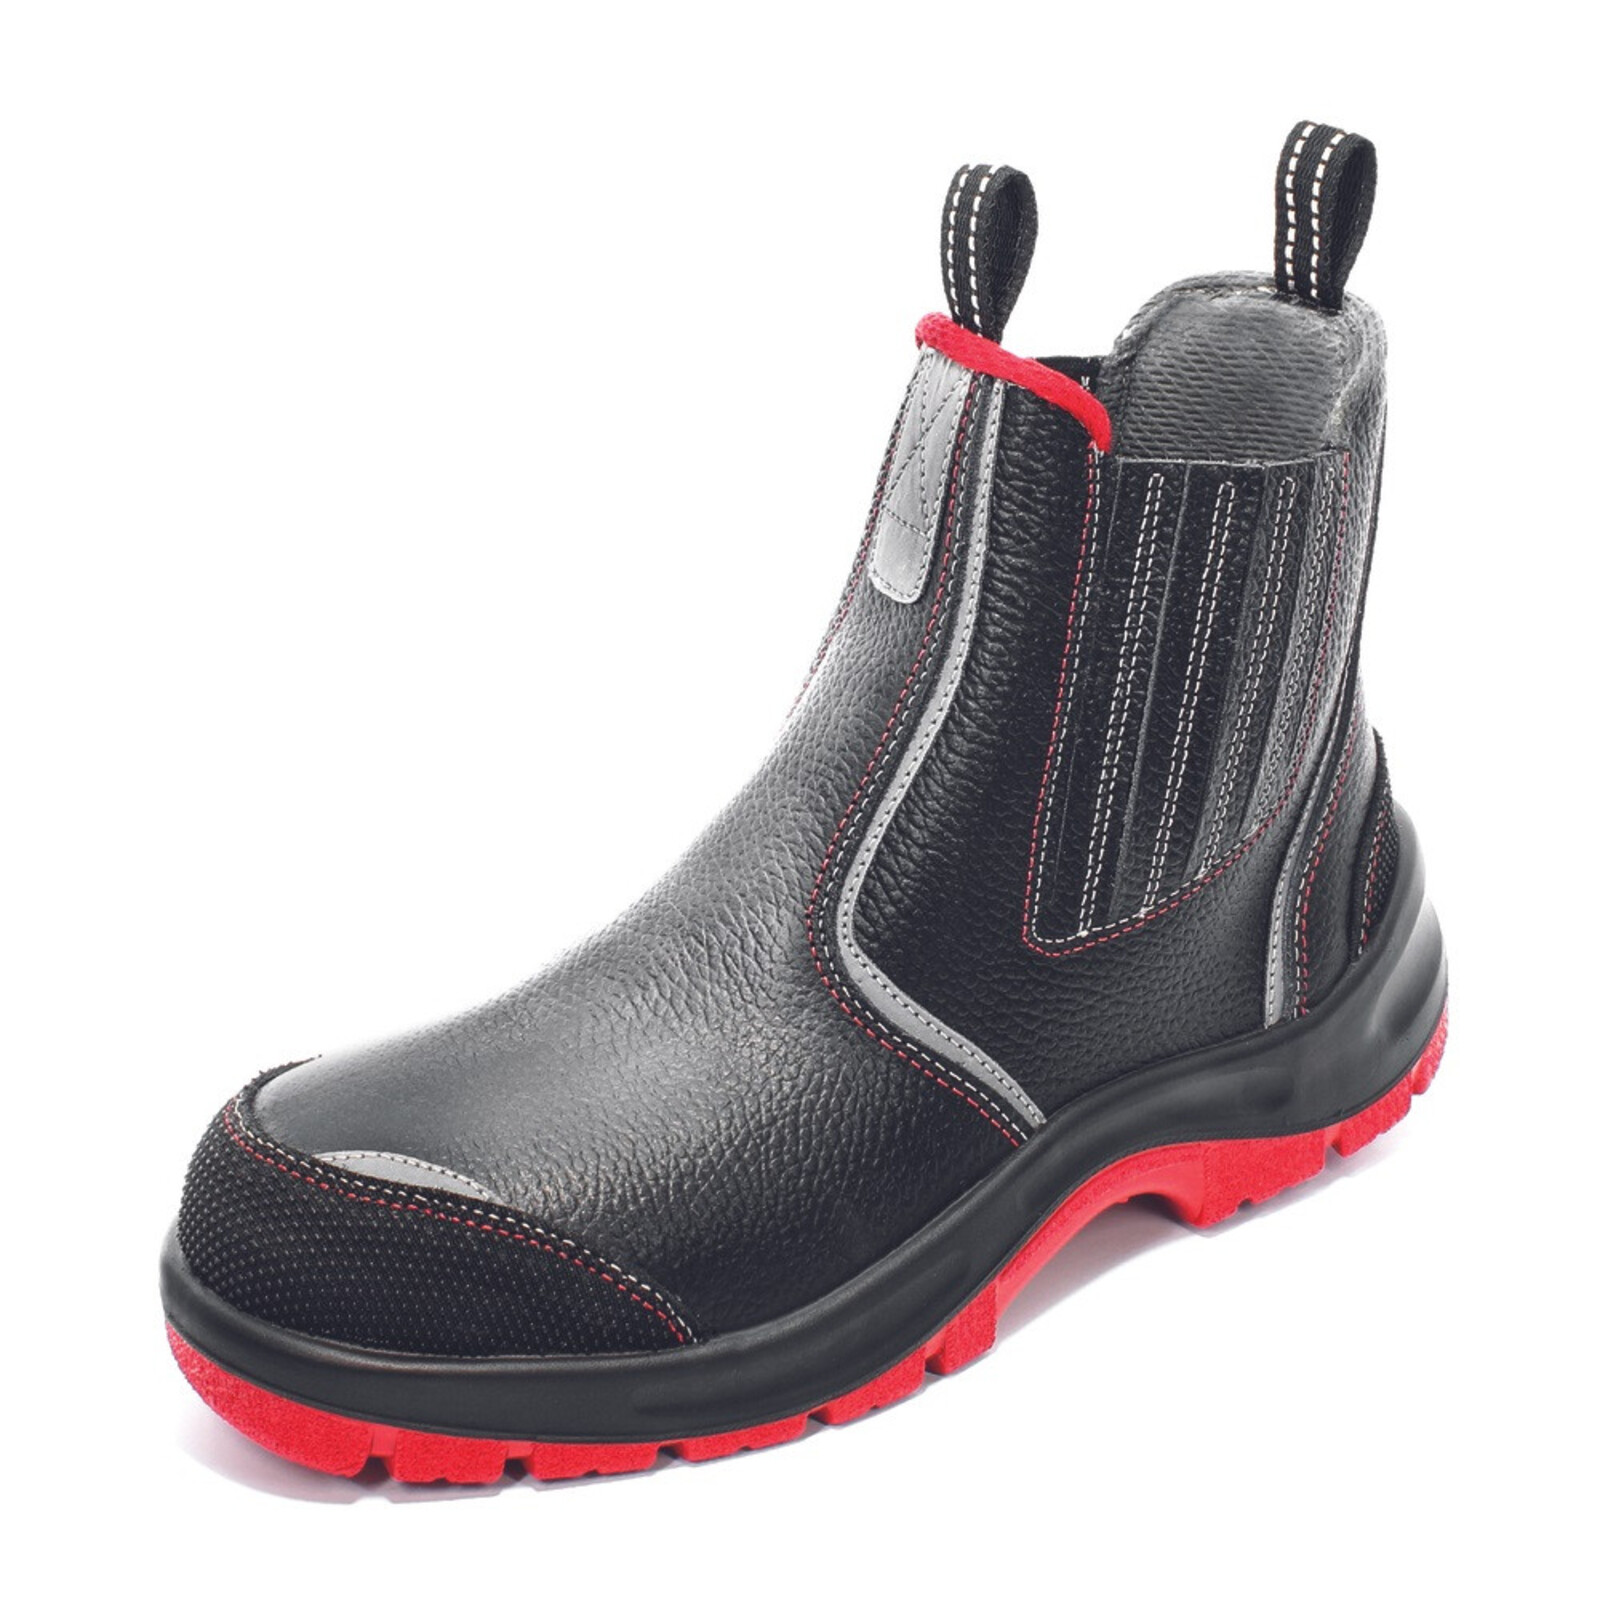 Bezpečnostná členková obuv Panda Strong Nuovo Eurotech MF S3 SRC - veľkosť: 44, farba: čierna/červená